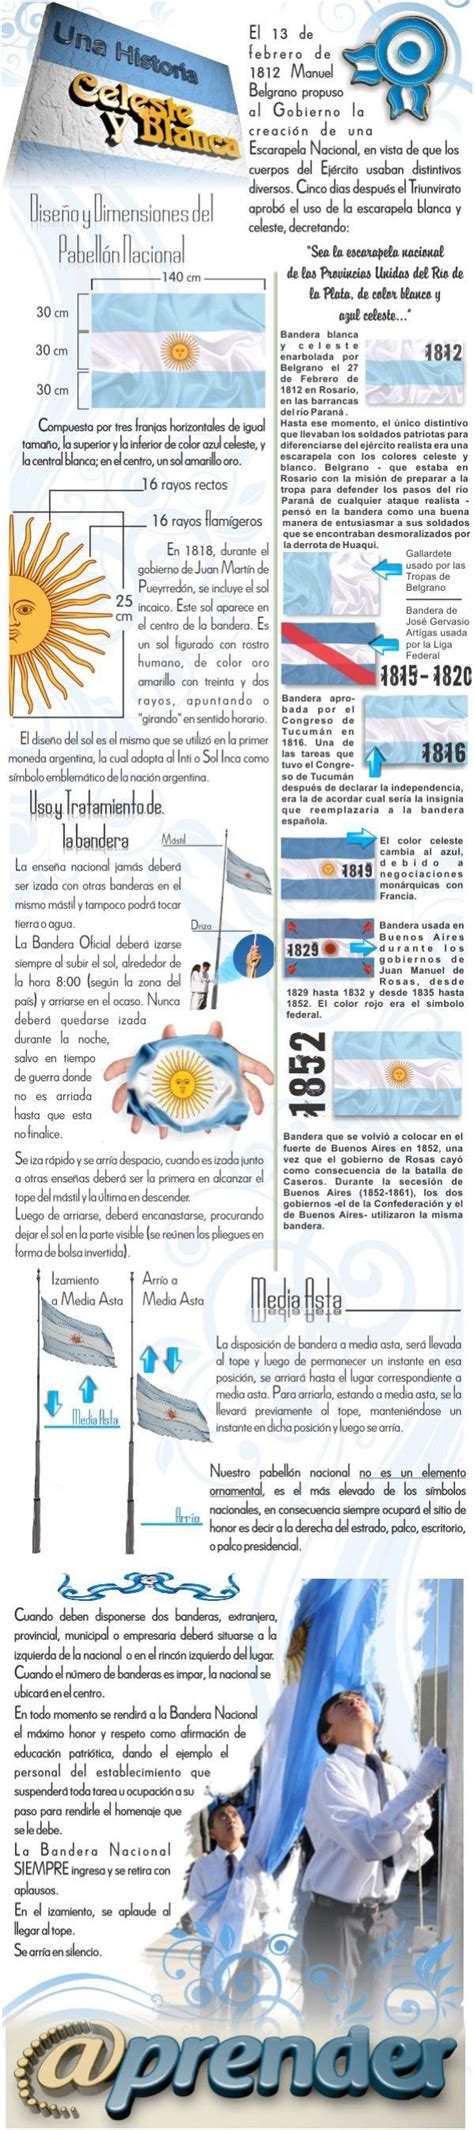 Historia De La Bandera Argentina Infographic Argentin